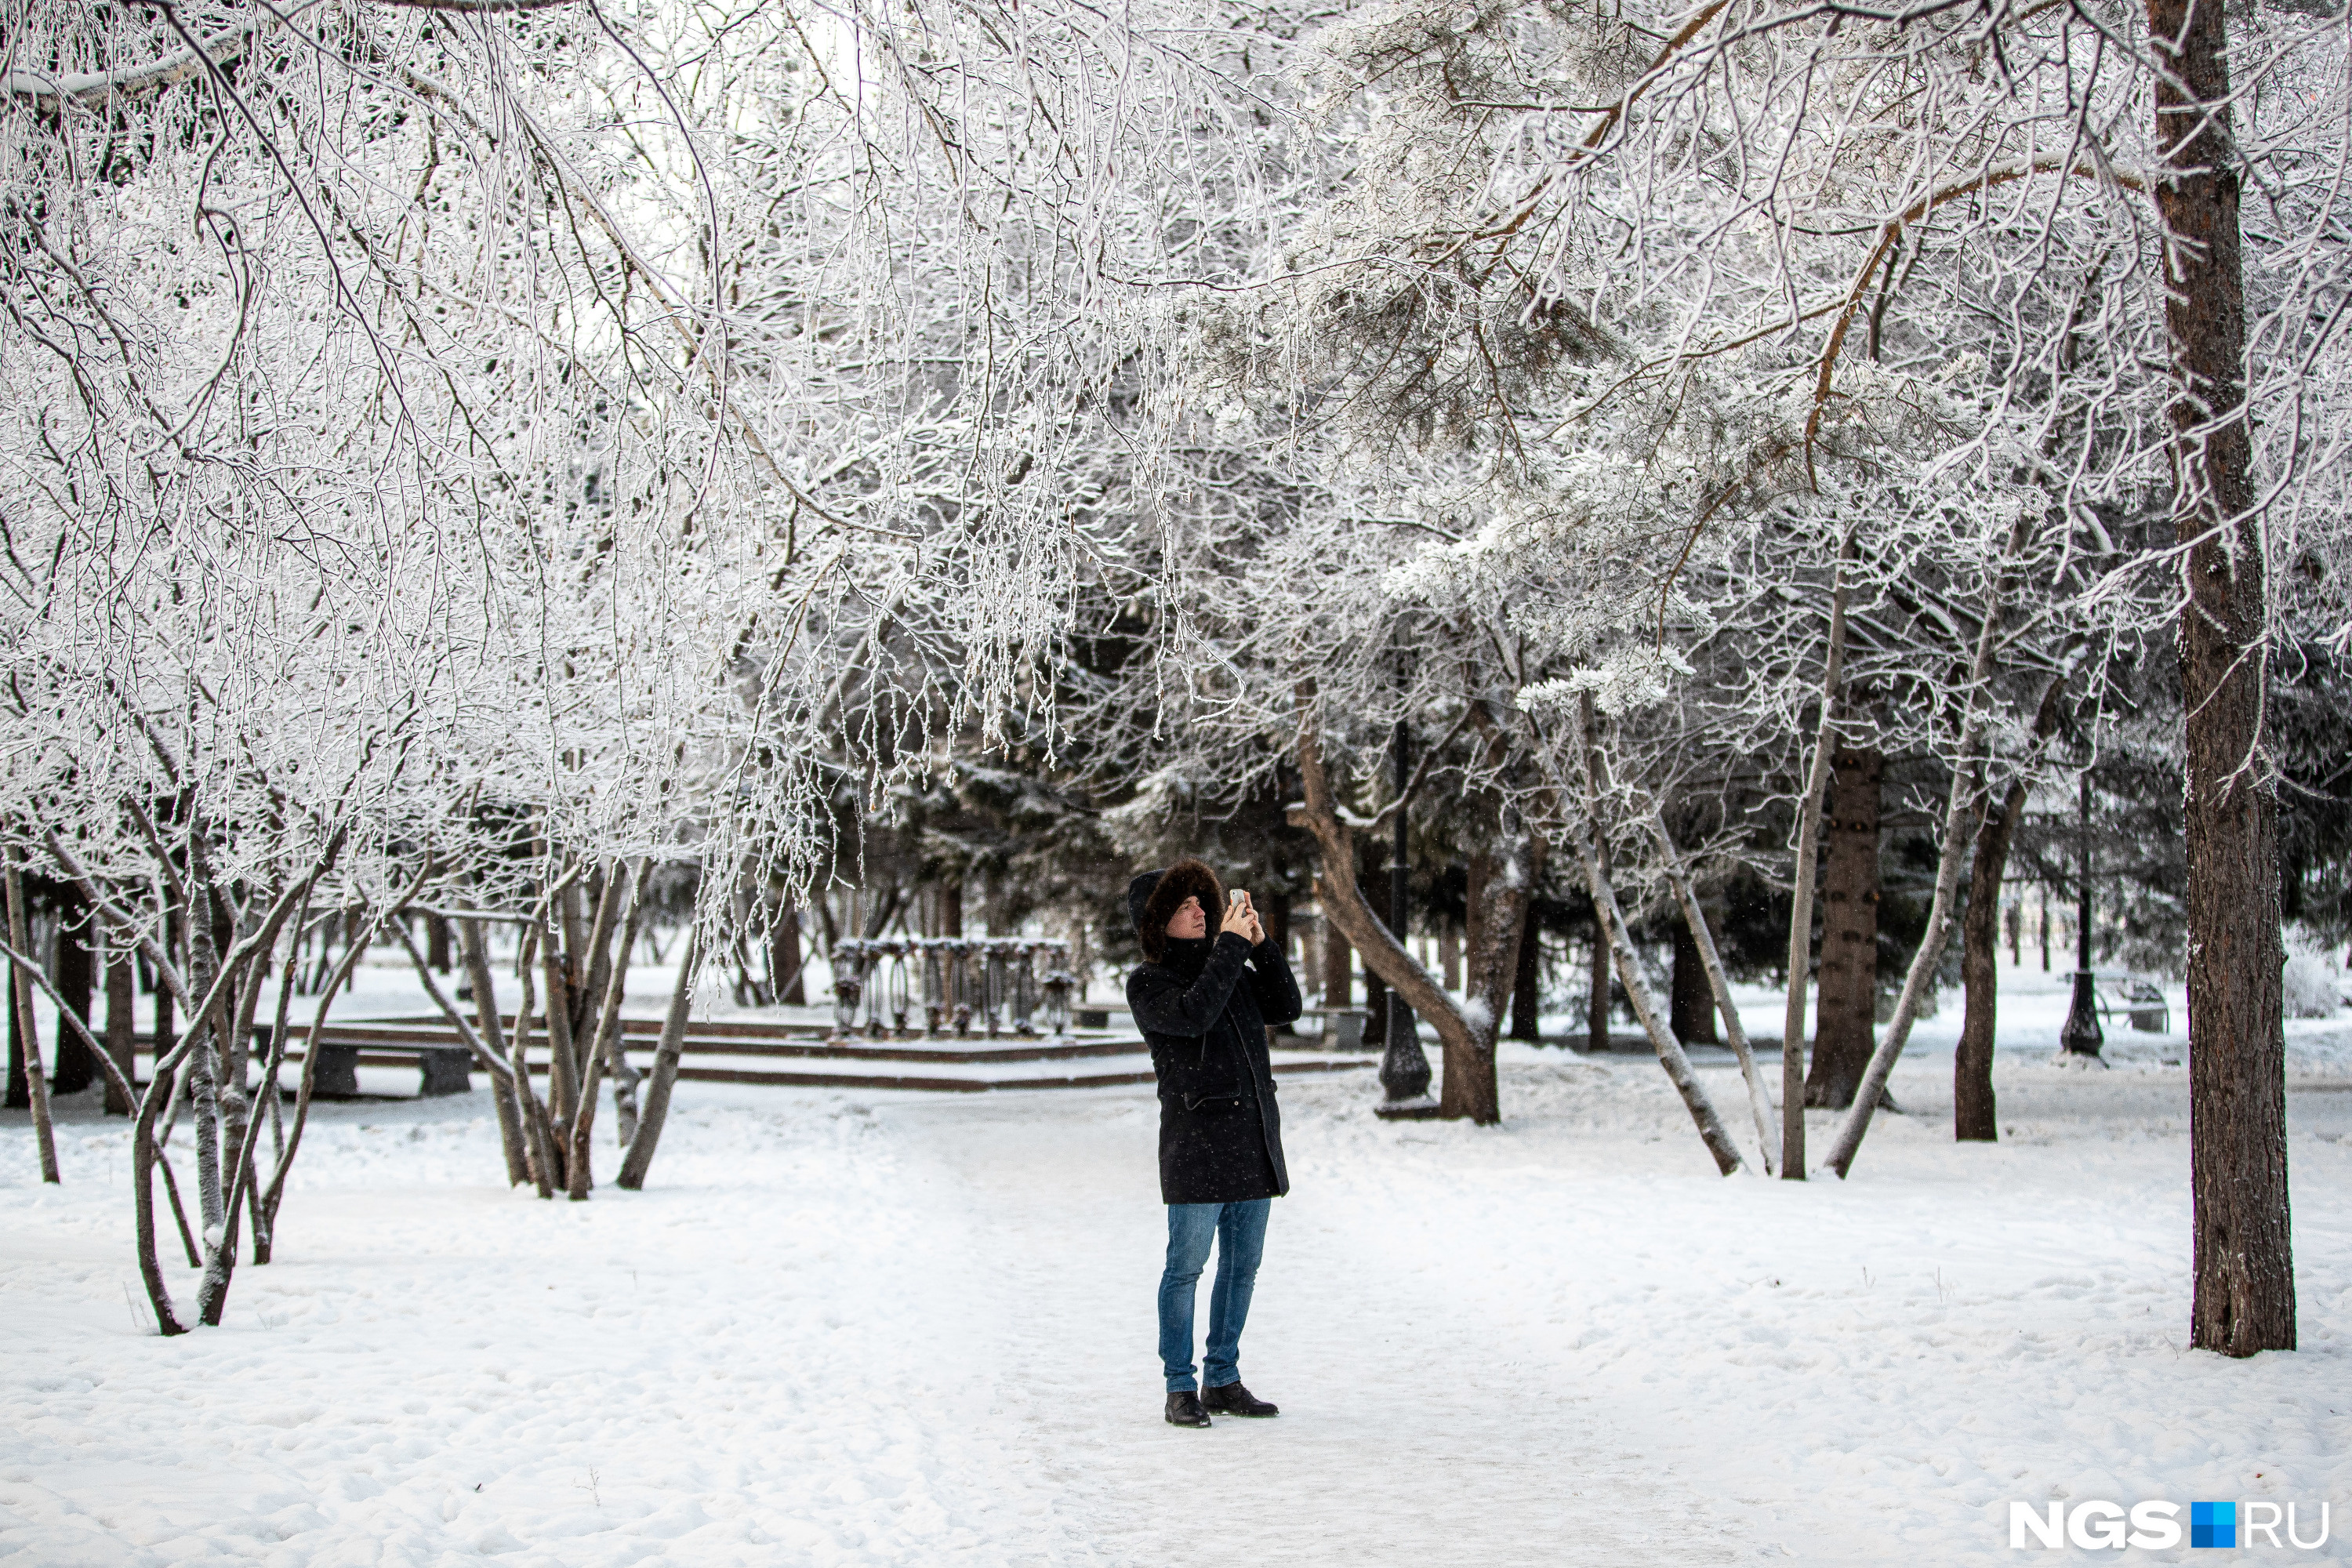 Тех же, кто не побоялся прогуляться по морозному Новосибирску, ждала вот такая красота. Почему бы не запечатлеть это на память?